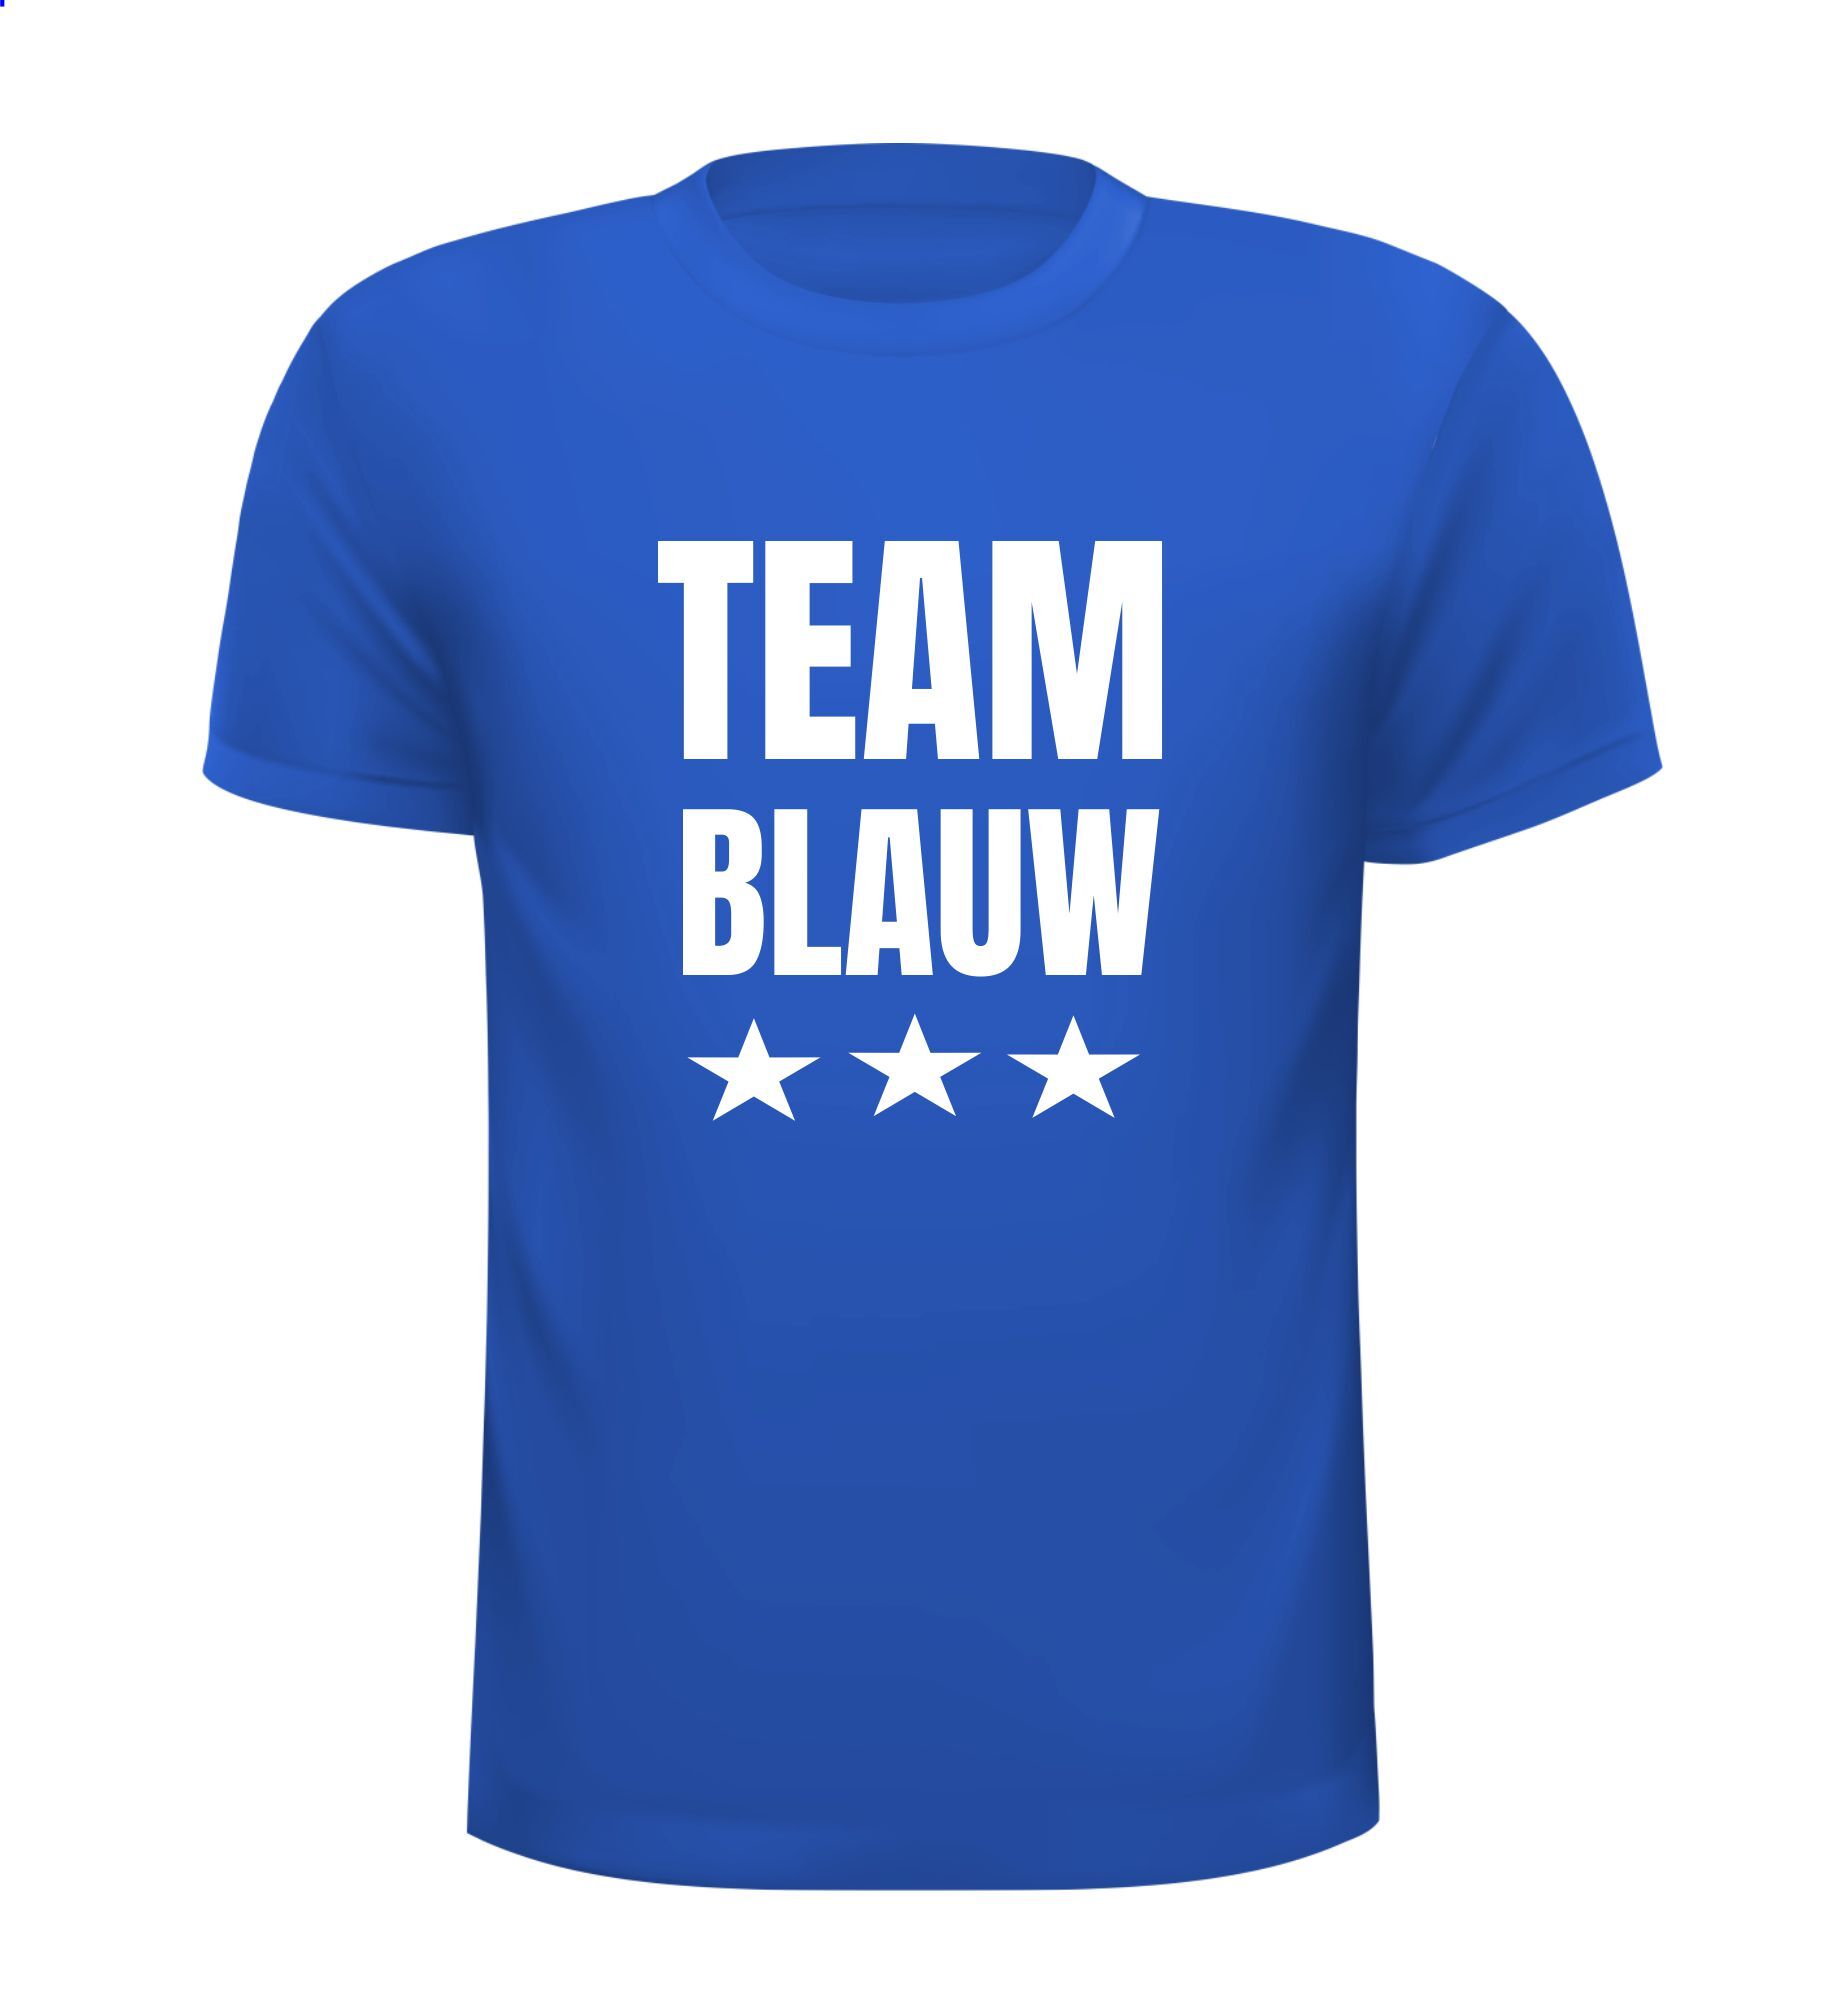 T-shirtje voor Team blauw.